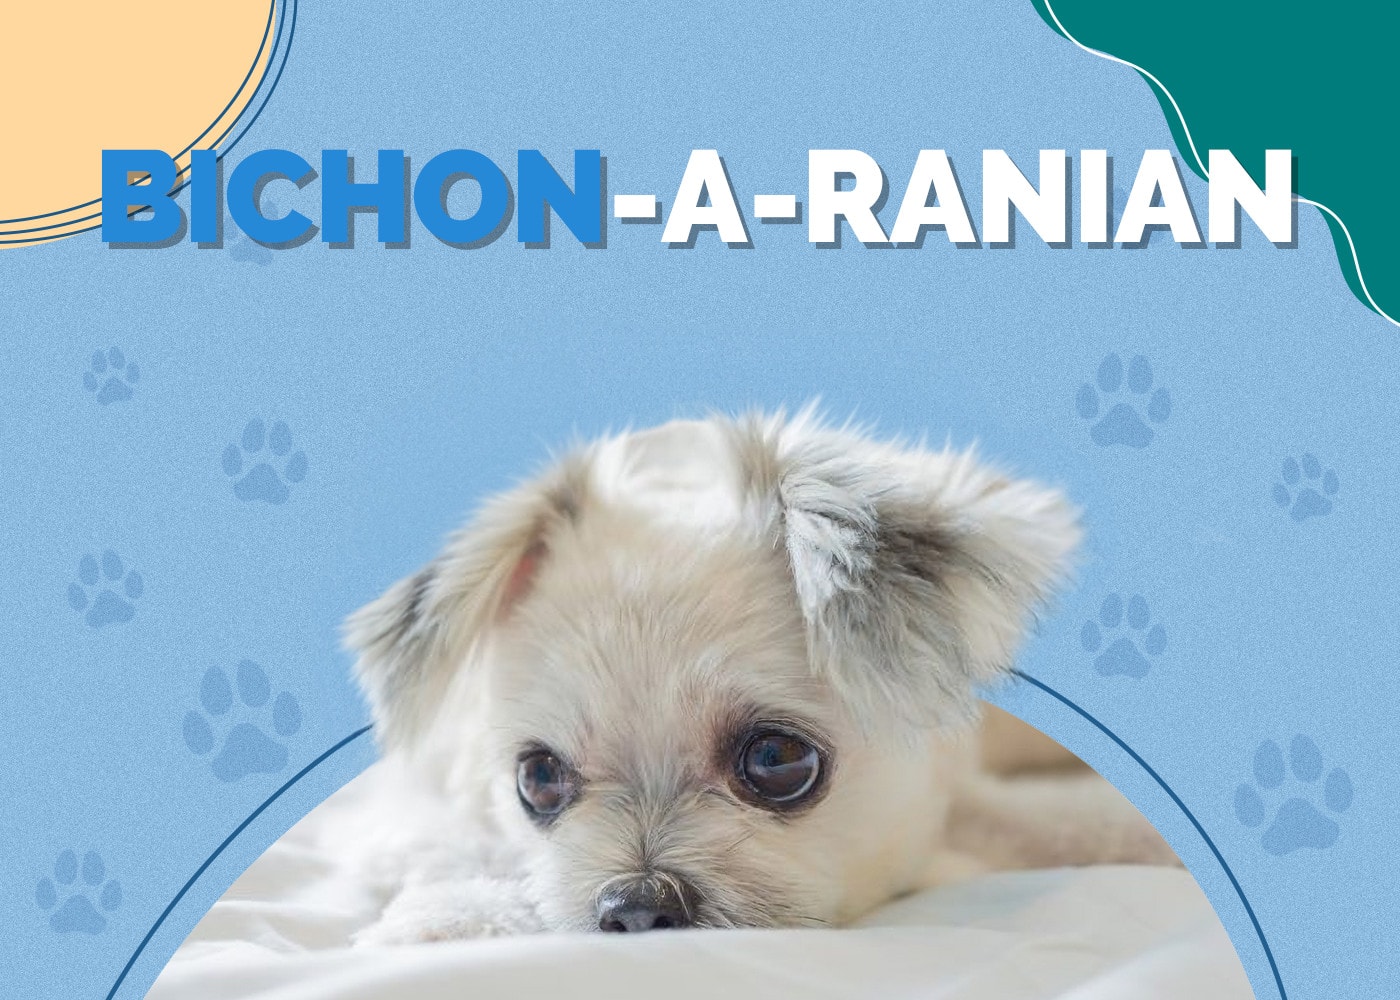 Bichon-A-Ranian (Bichon Frise & Pomeranian Mix)